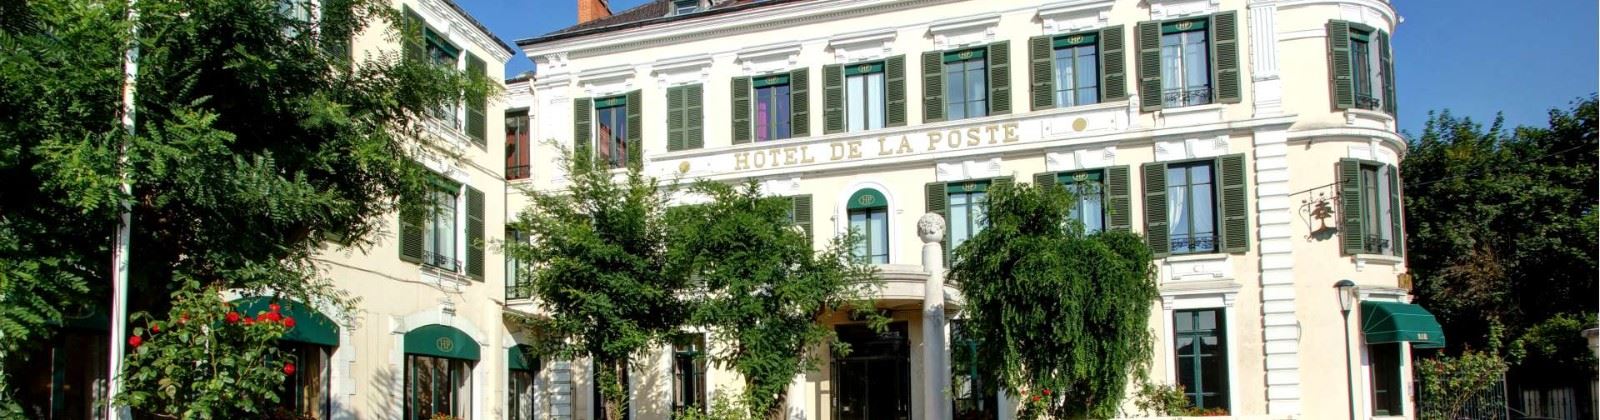 najeti hotel de la poste beaune facade exterieure  Olevene 